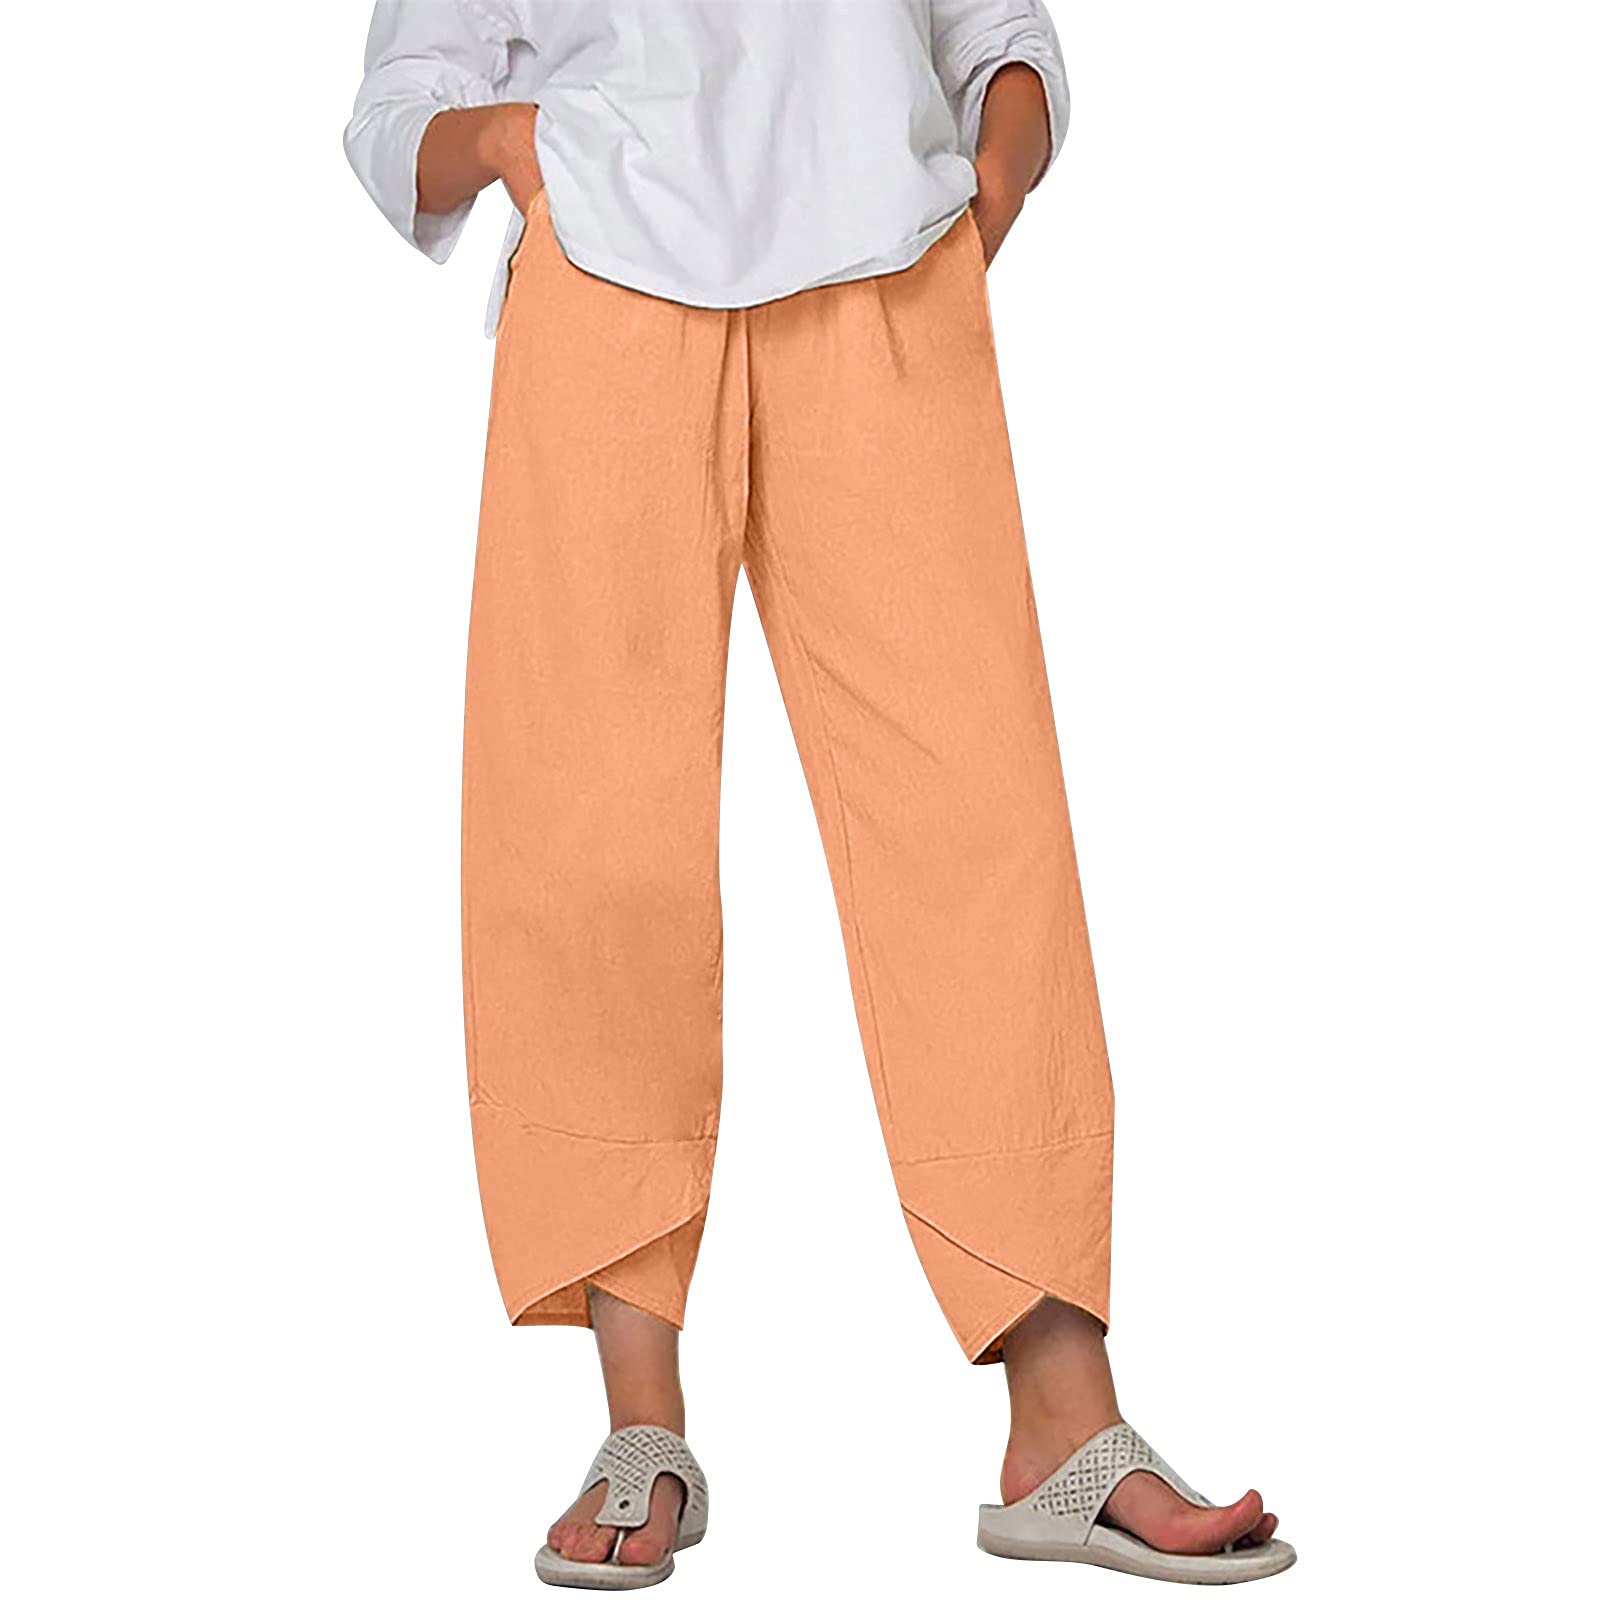 Capris Pants for Women Cotton Linen Wide Leg Casual Summer Comfy